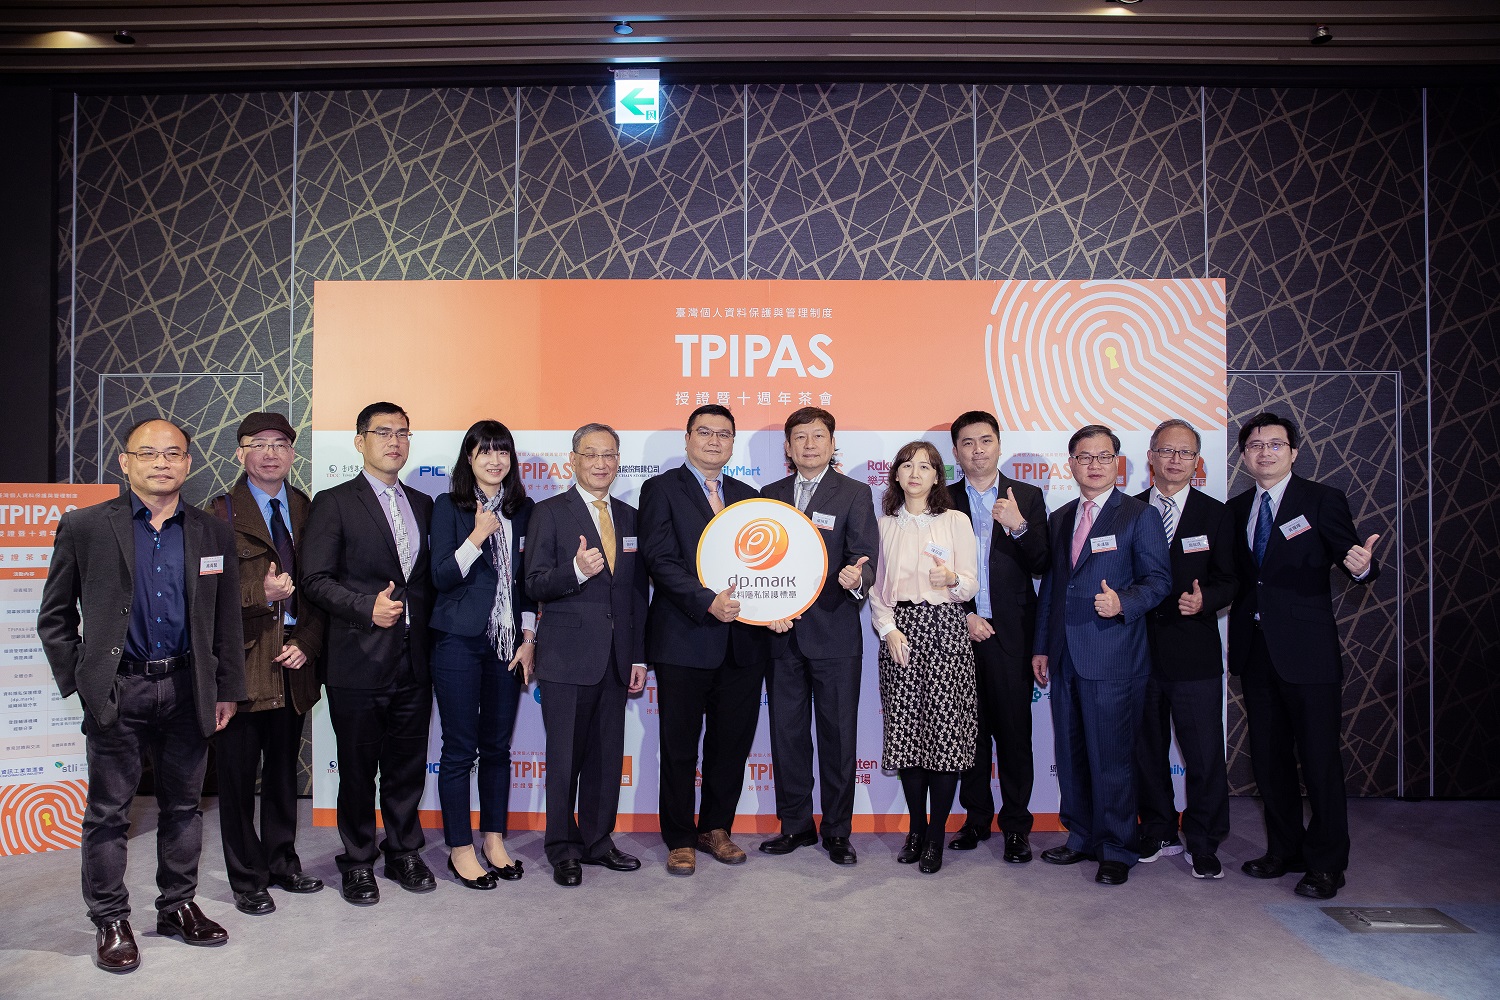 資策會科技法律研究所舉辦TPIPAS十周年暨授證茶會，現場頒與資料隱私保護標章（dp.mark），肯定業者對於完善國內個資保護環境之努力